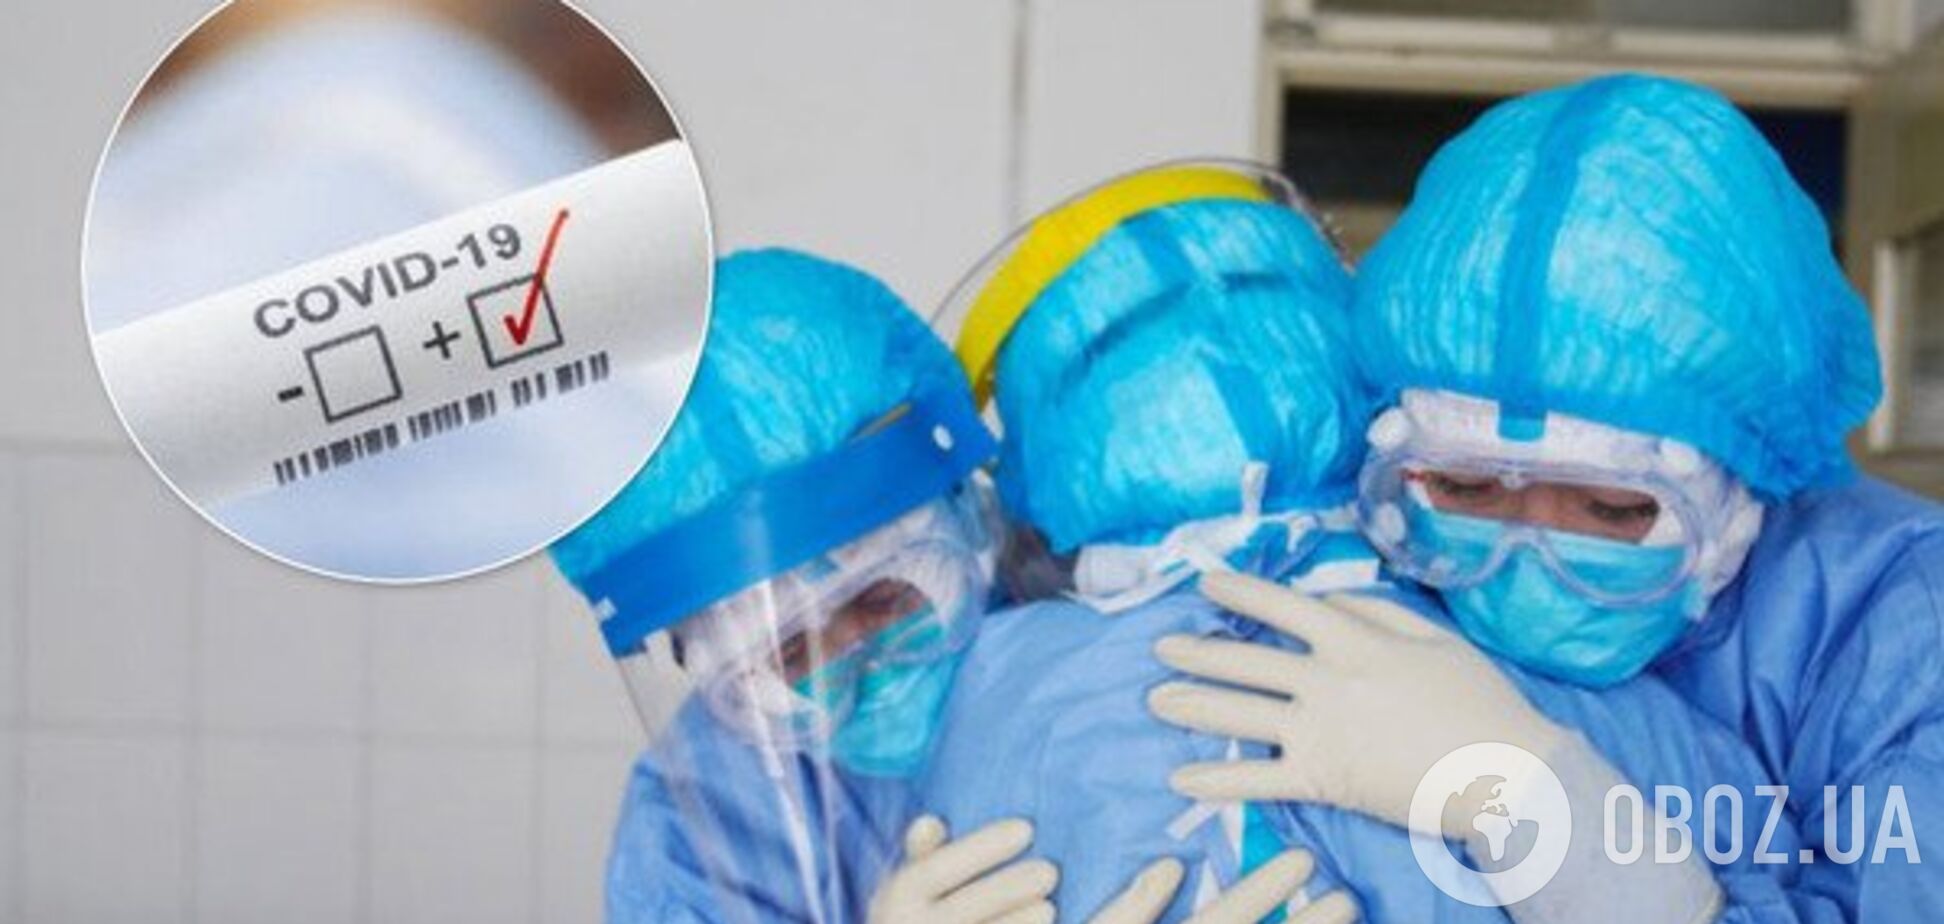 В МОЗ назвали эпицентры вспышки коронавируса в Украине: список регионов